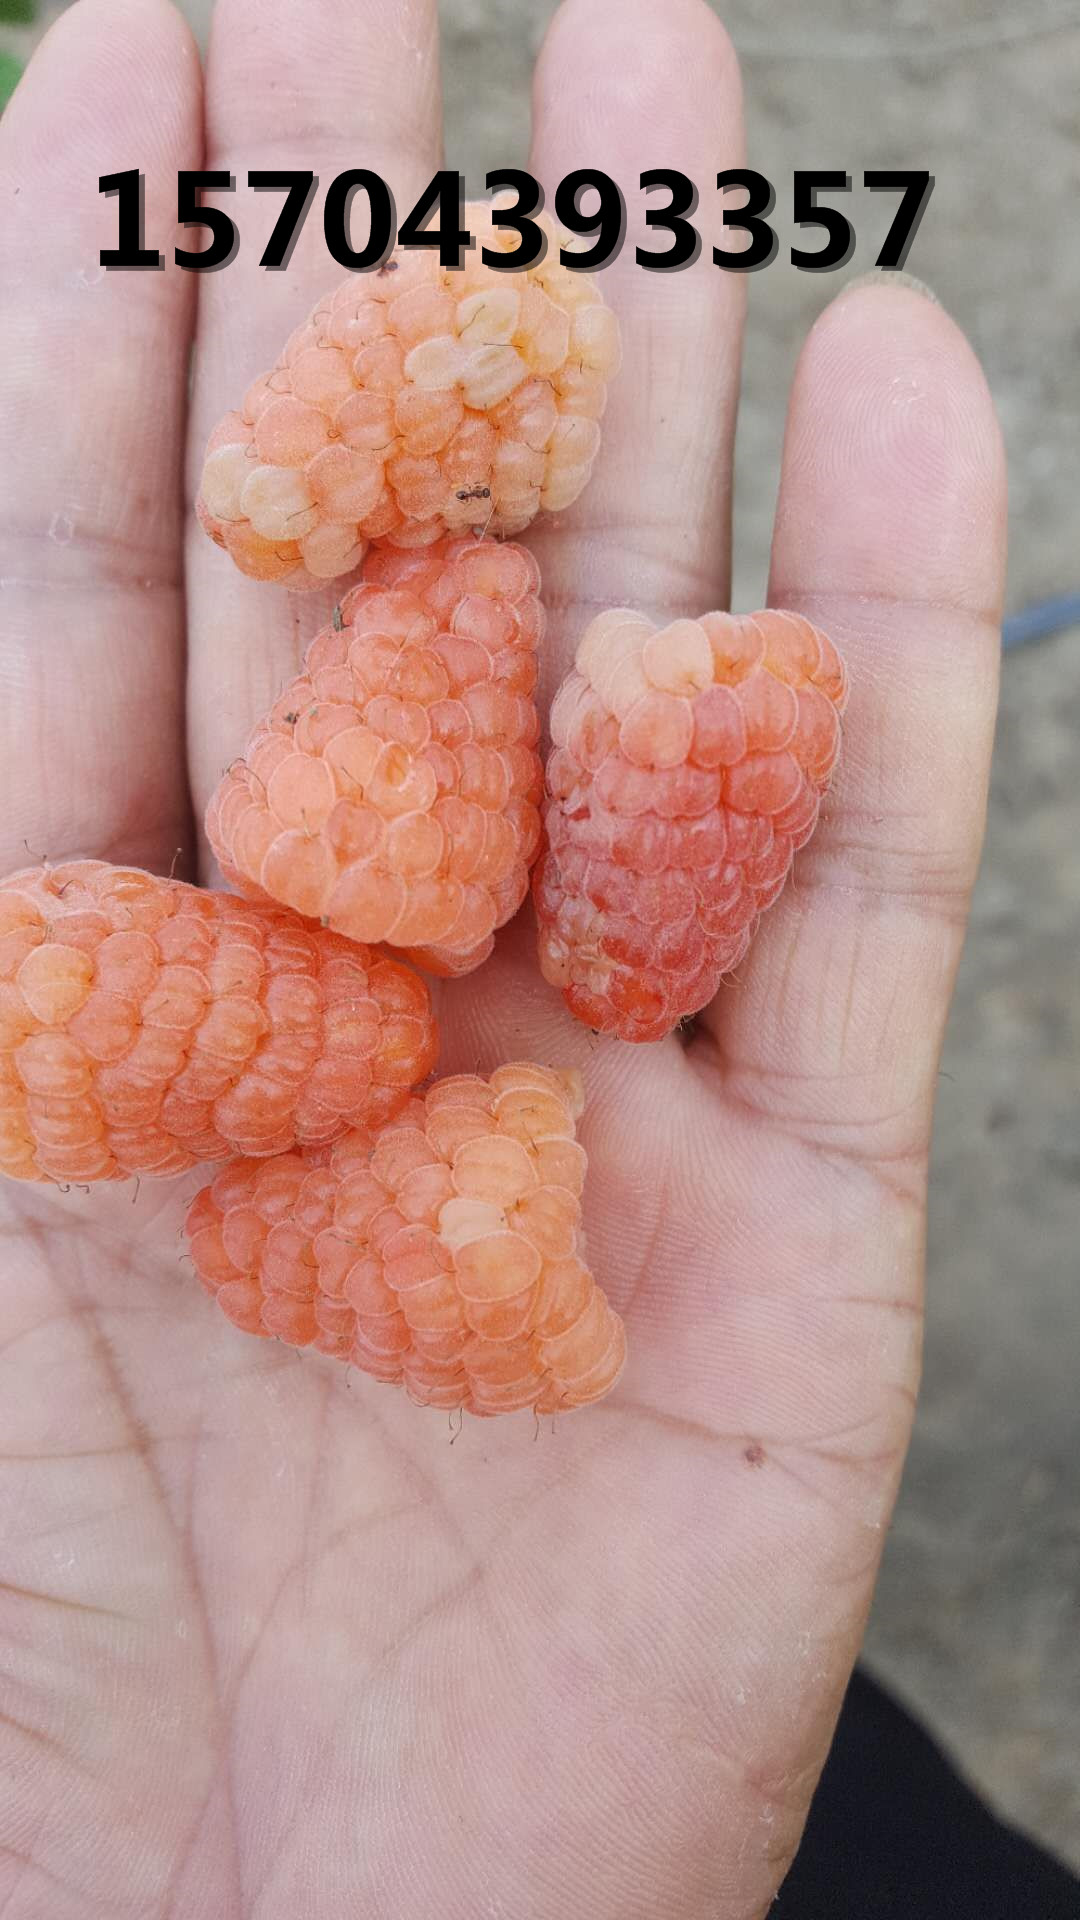 樹莓新品種橙色奇跡